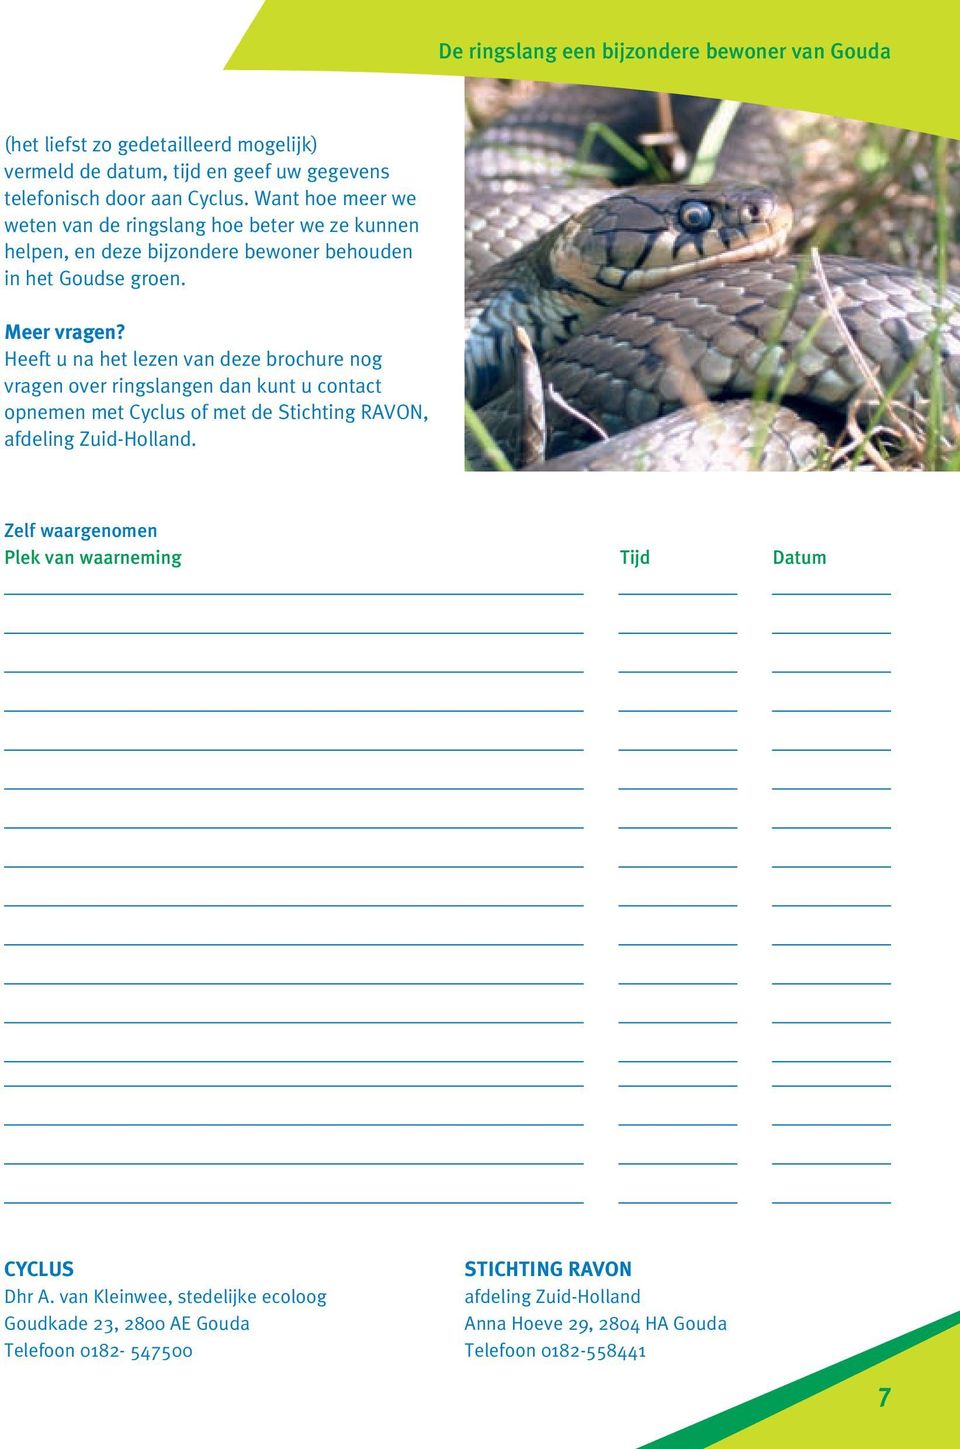 Heeft u na het lezen van deze brochure nog vragen over ringslangen dan kunt u contact opnemen met Cyclus of met de Stichting RAVON, afdeling Zuid-Holland.